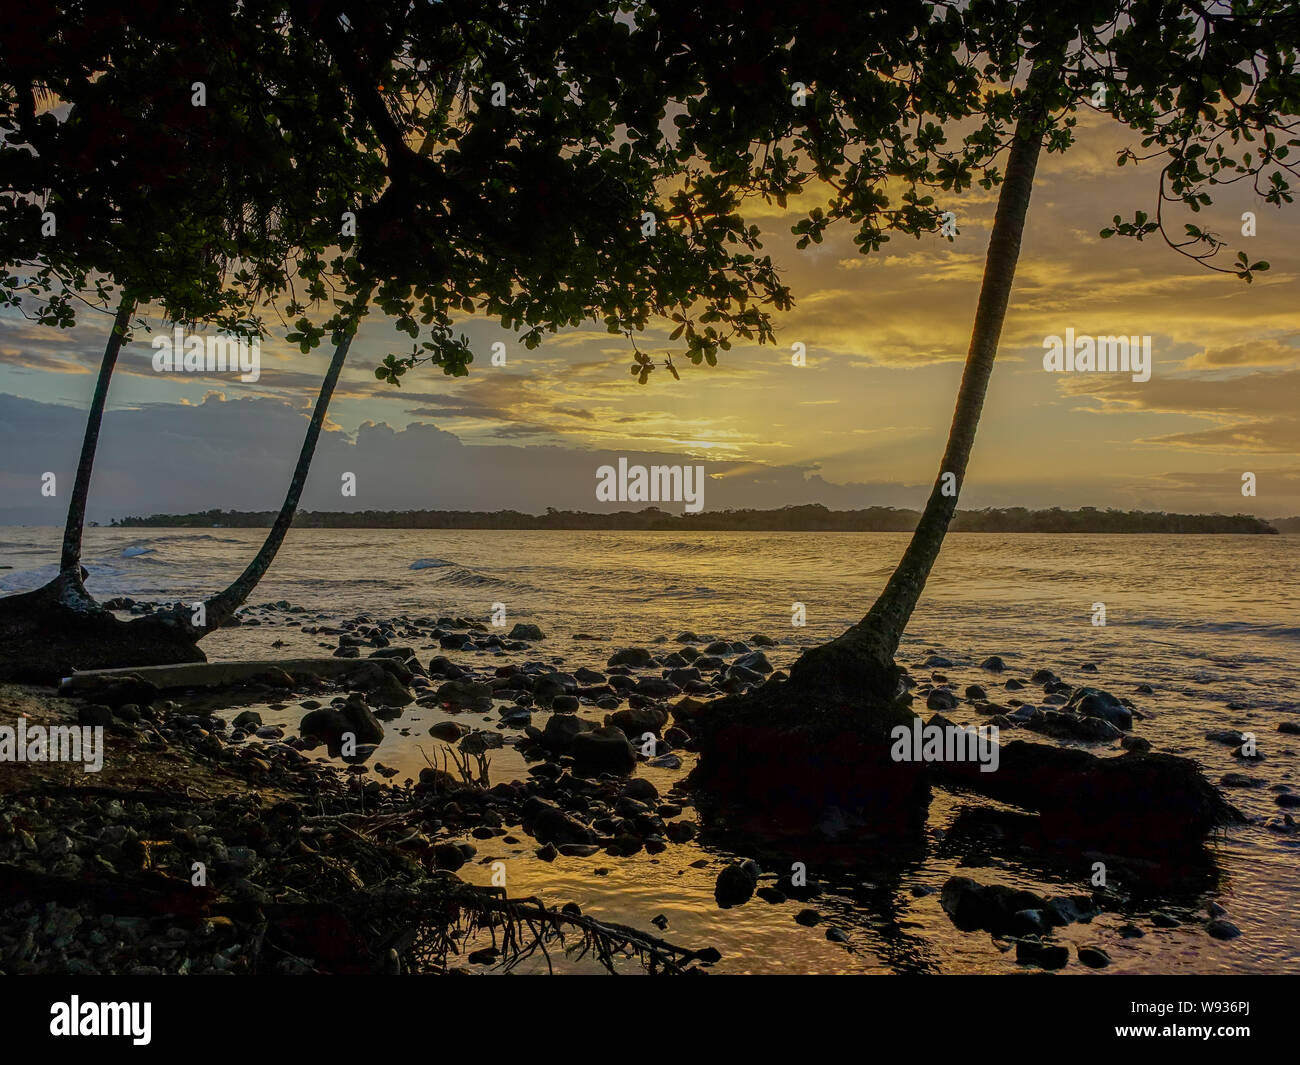 Insel Bastimentos, Bocas del Toro, Panama - 18. März 2017: Sonnenuntergang am Strand mit der Sonne unter Palmen mit Bastimentos Island in der b Stockfoto